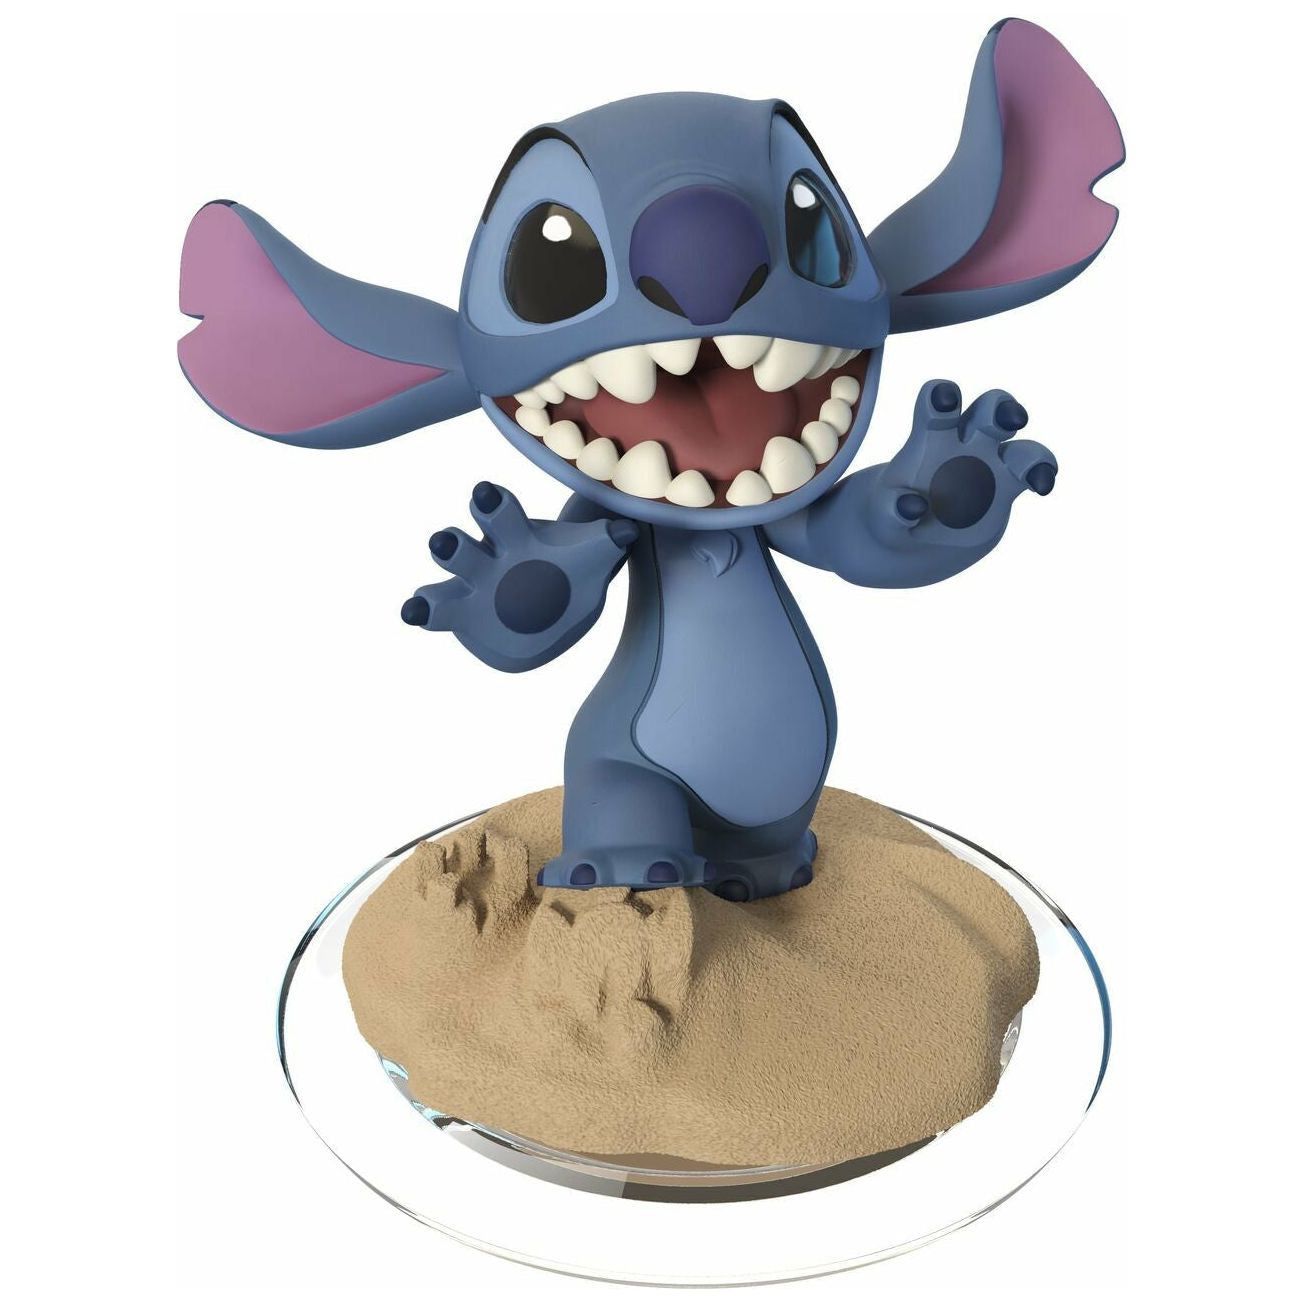 Disney Infinity 2.0 - Stitch Figure